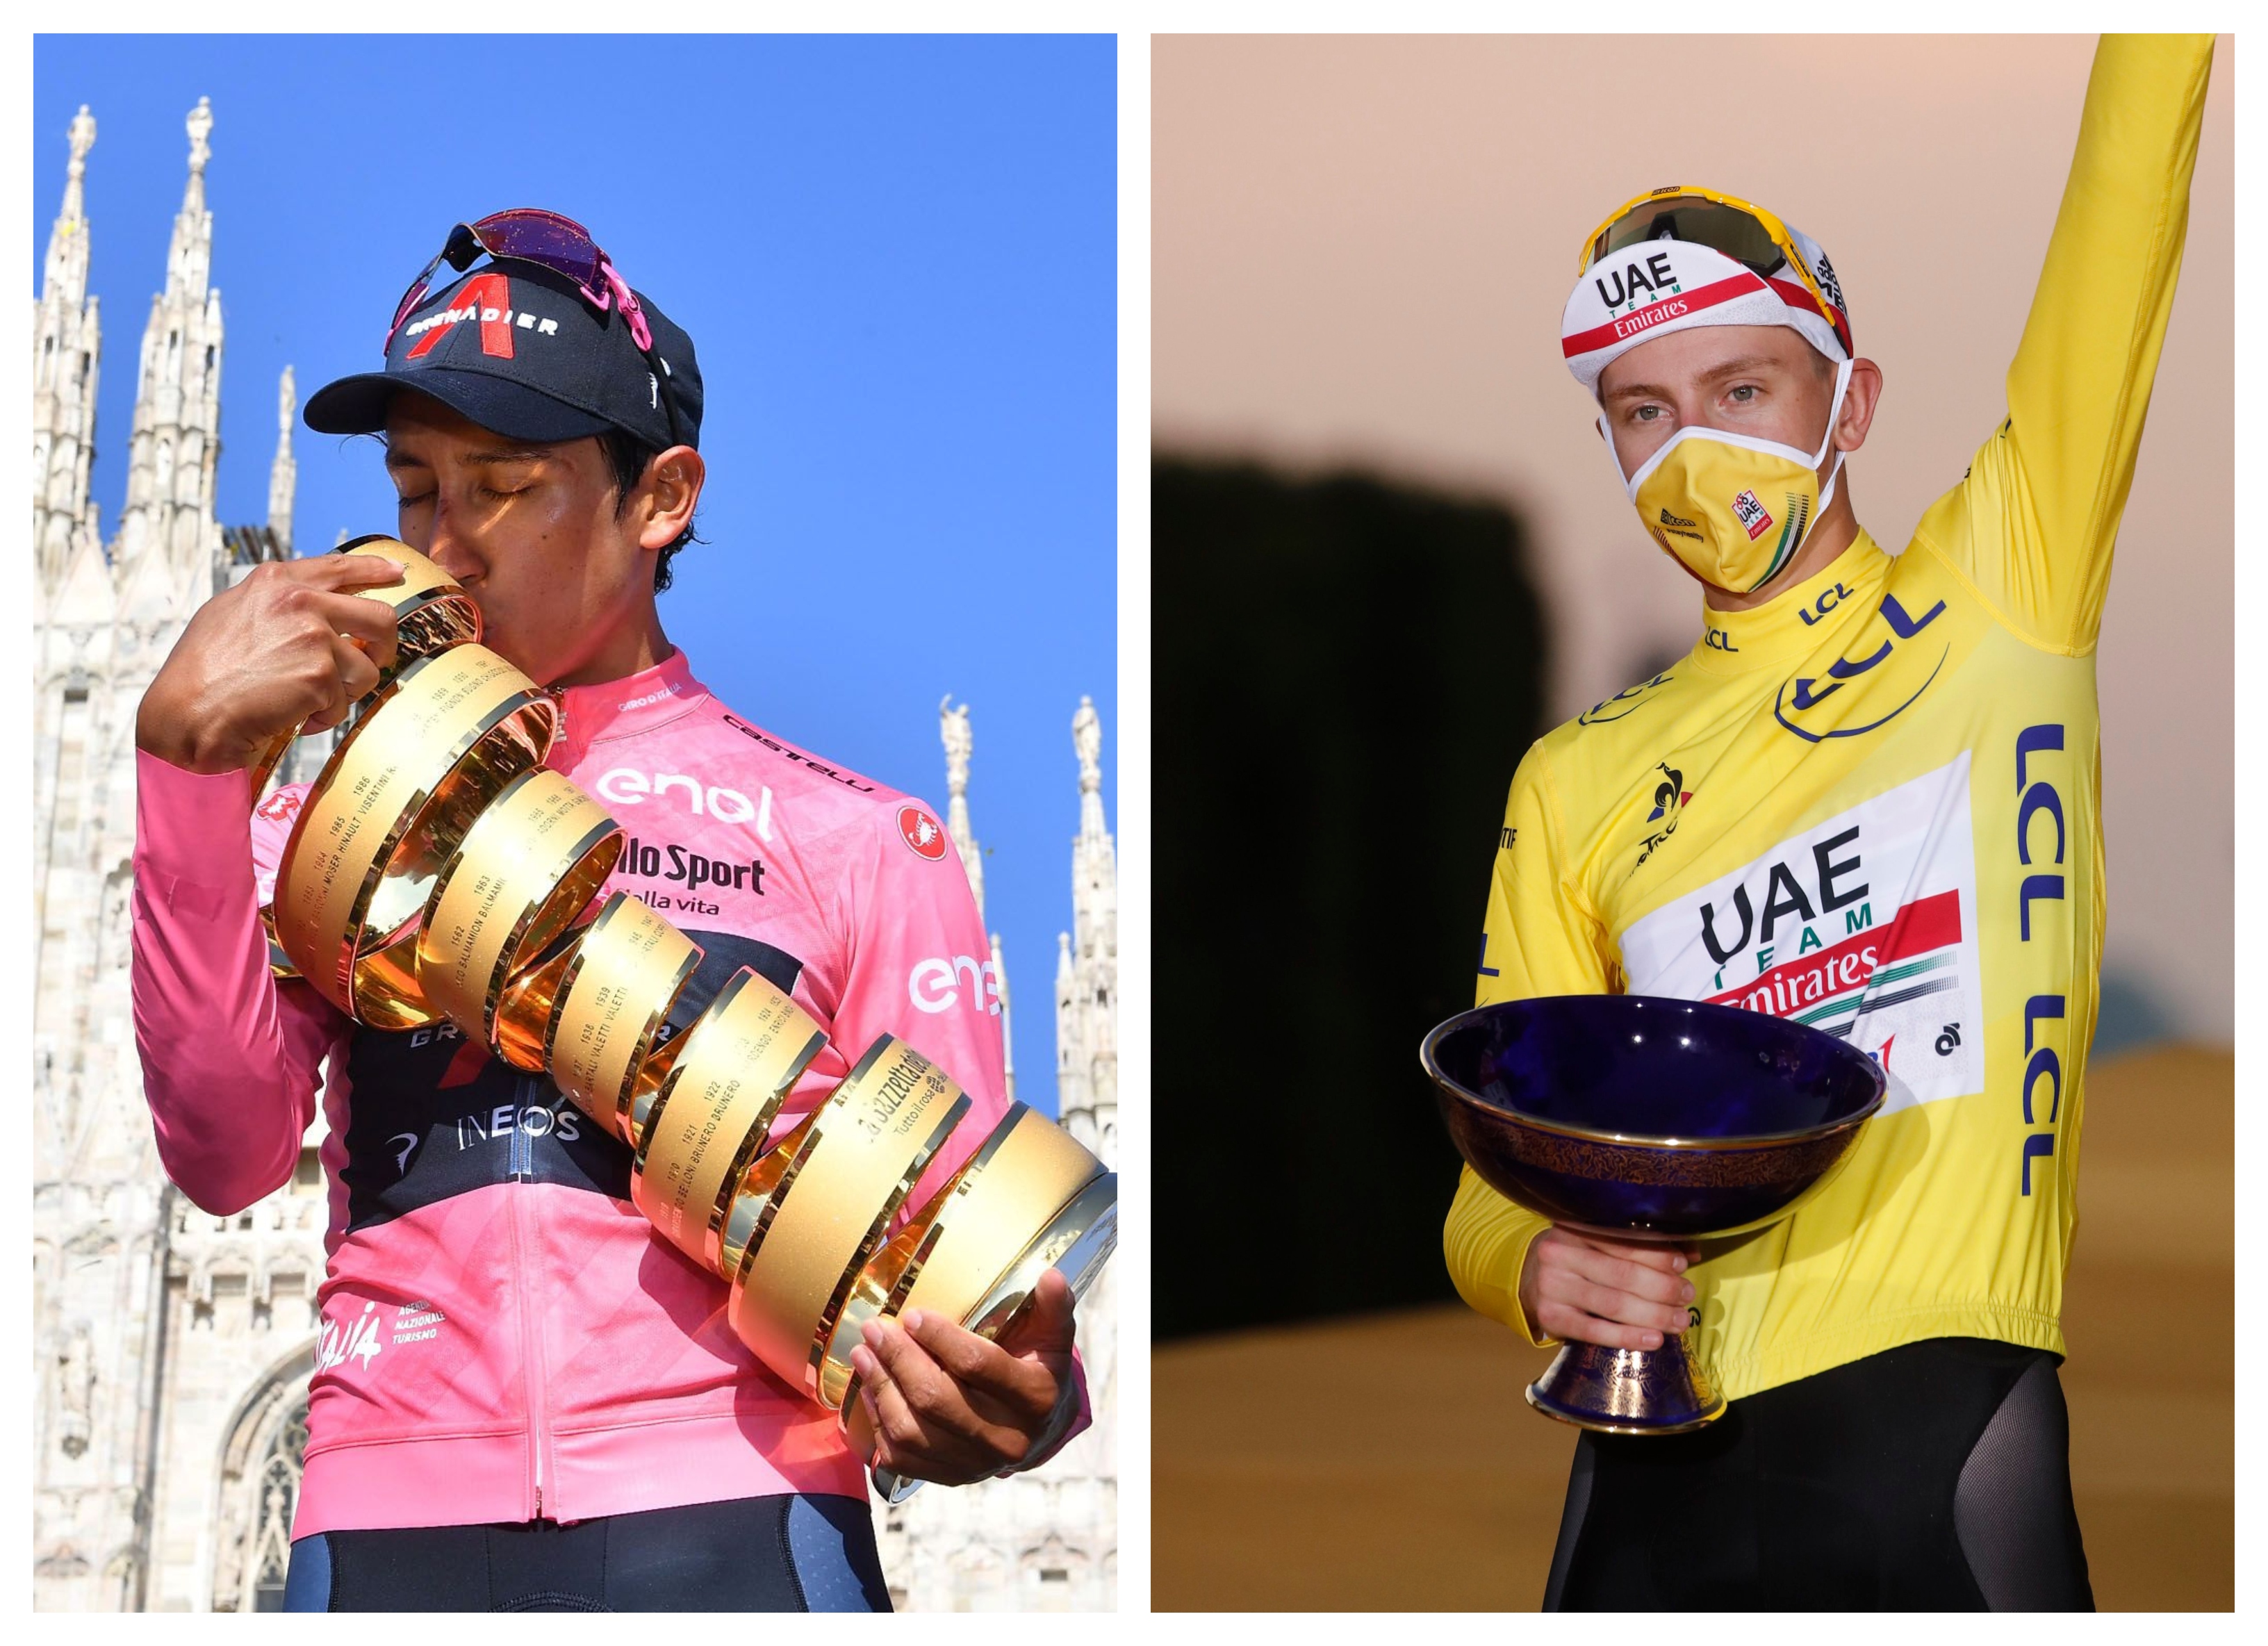 Con 24 años, Egan Bernal buscaría participar en La Vuelta a España 2021 para ganar la triple corona del ciclismo; con 22, Tadej Pogacar está cerca de ganar el Tour de Francia por segunda ocasión. Foto: Reuters